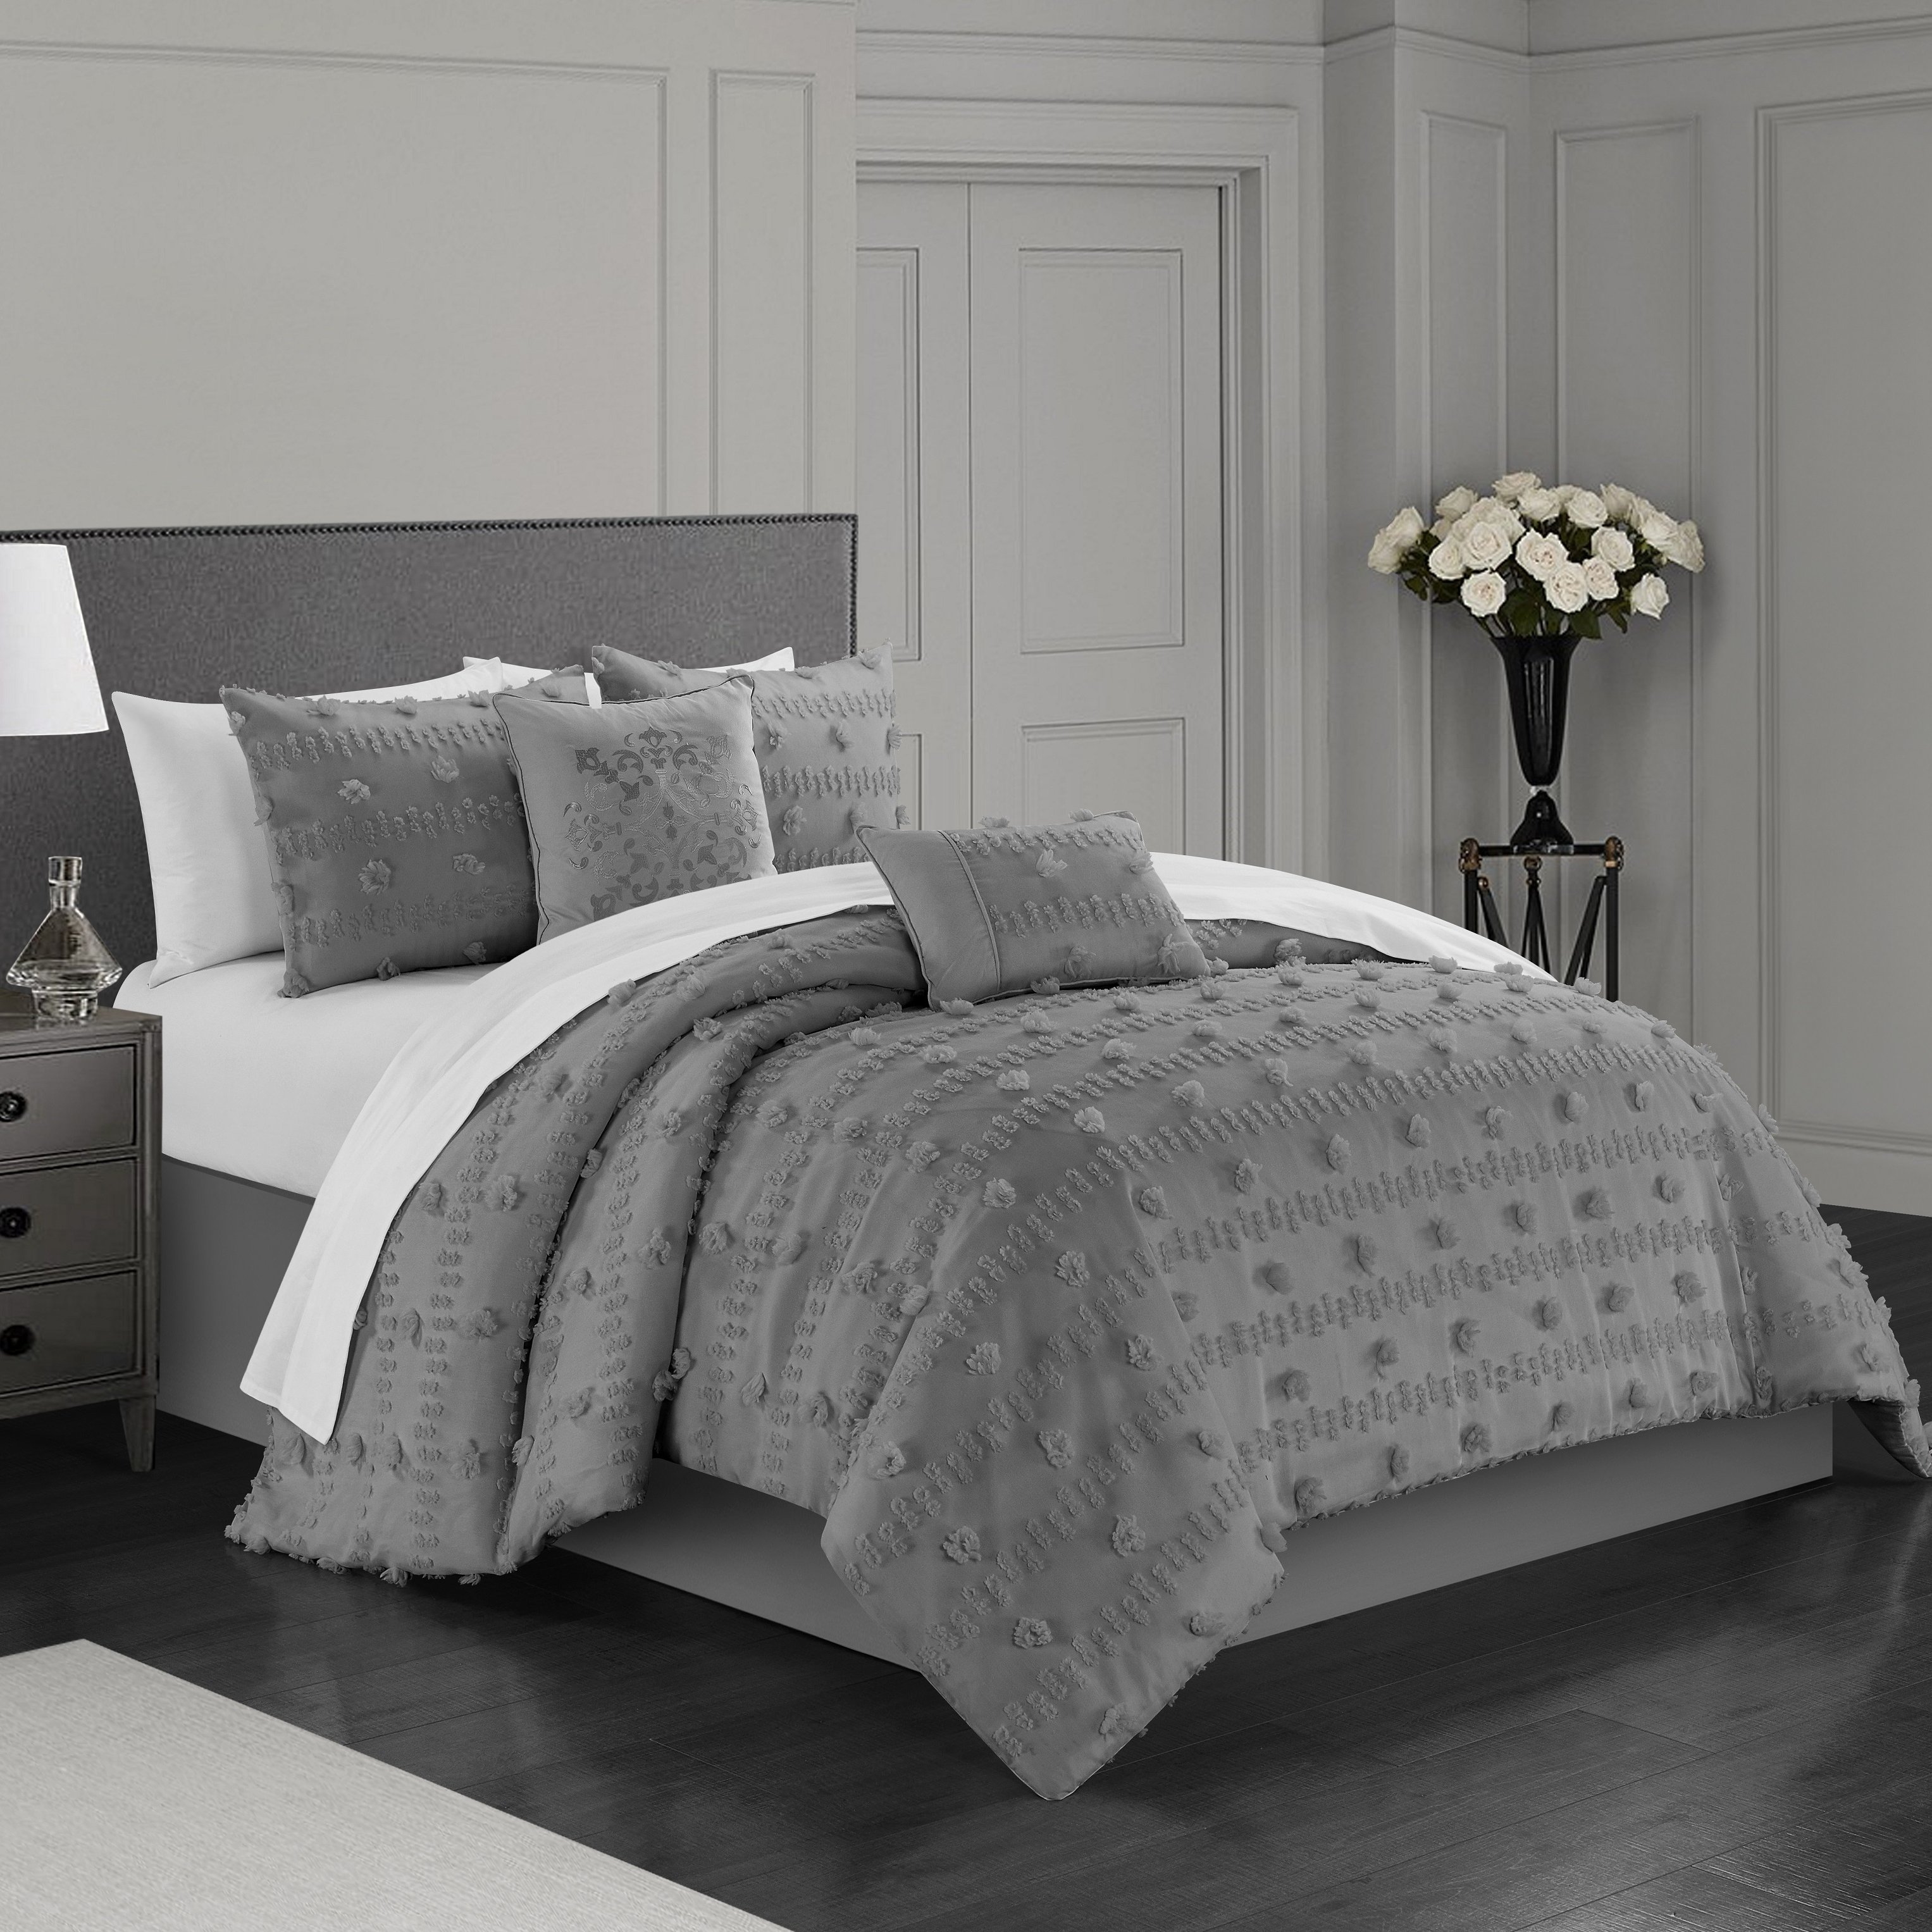 Ahtisa 5 Piece Comforter Set Jacquard Floral Applique Design Bedding - Grey, King